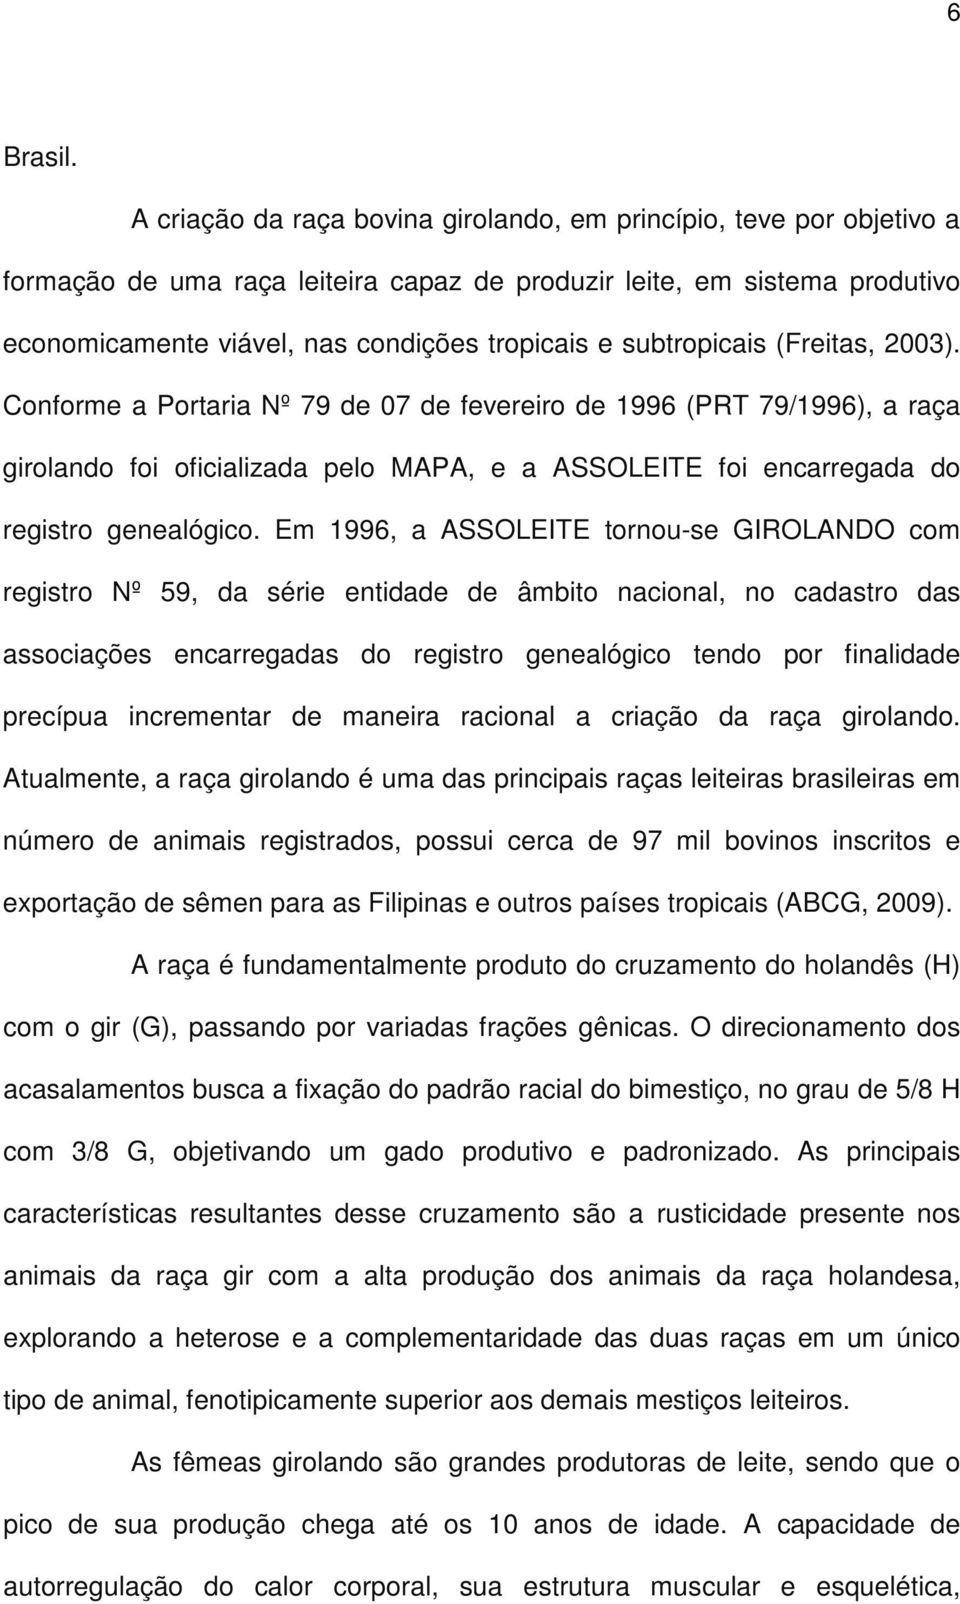 subtropicais (Freitas, 2003). Conforme a Portaria Nº 79 de 07 de fevereiro de 1996 (PRT 79/1996), a raça girolando foi oficializada pelo MAPA, e a ASSOLEITE foi encarregada do registro genealógico.